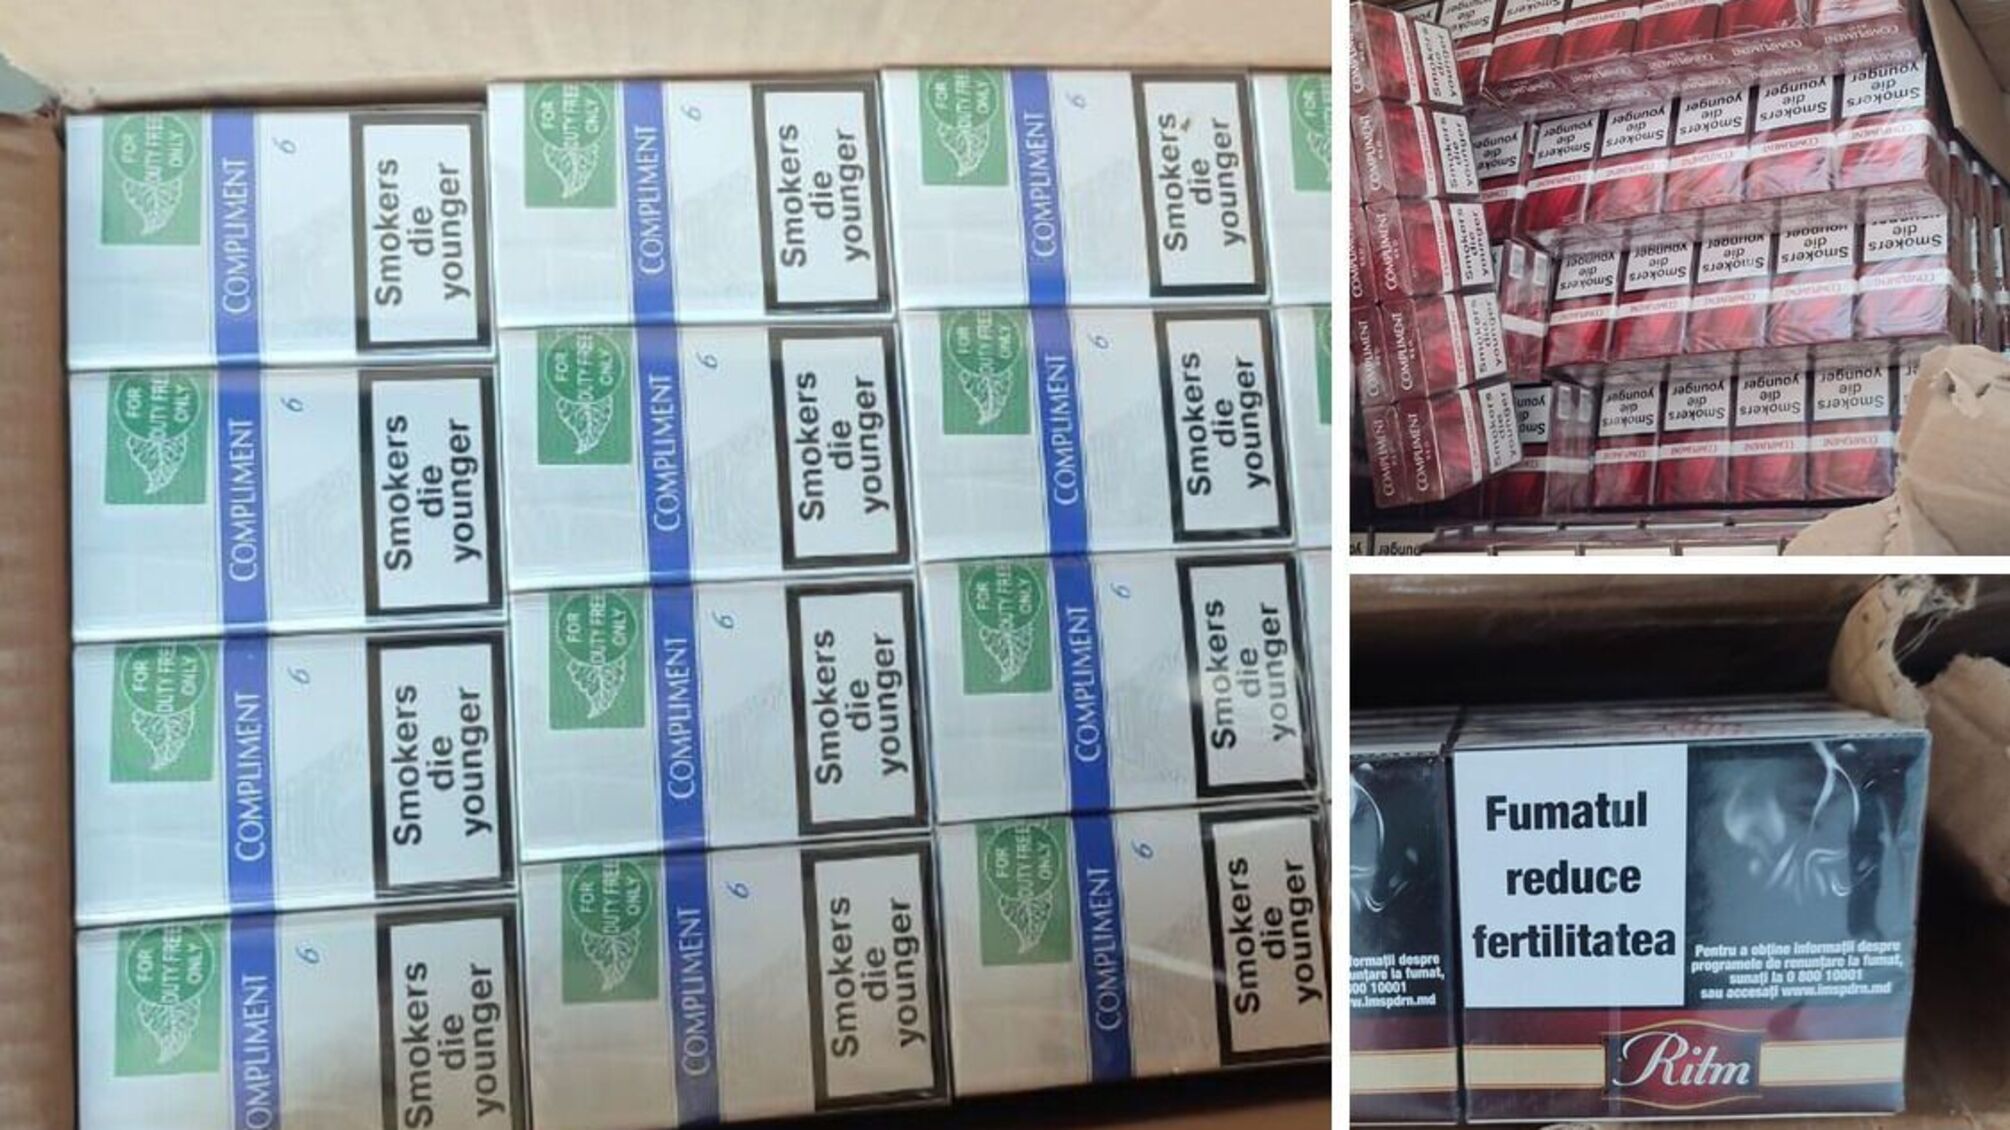  Вилучили продукції на 1,5 млн грн: жителі Тернопільщини організували масштабний тютюновий бізнес 'в тіні'